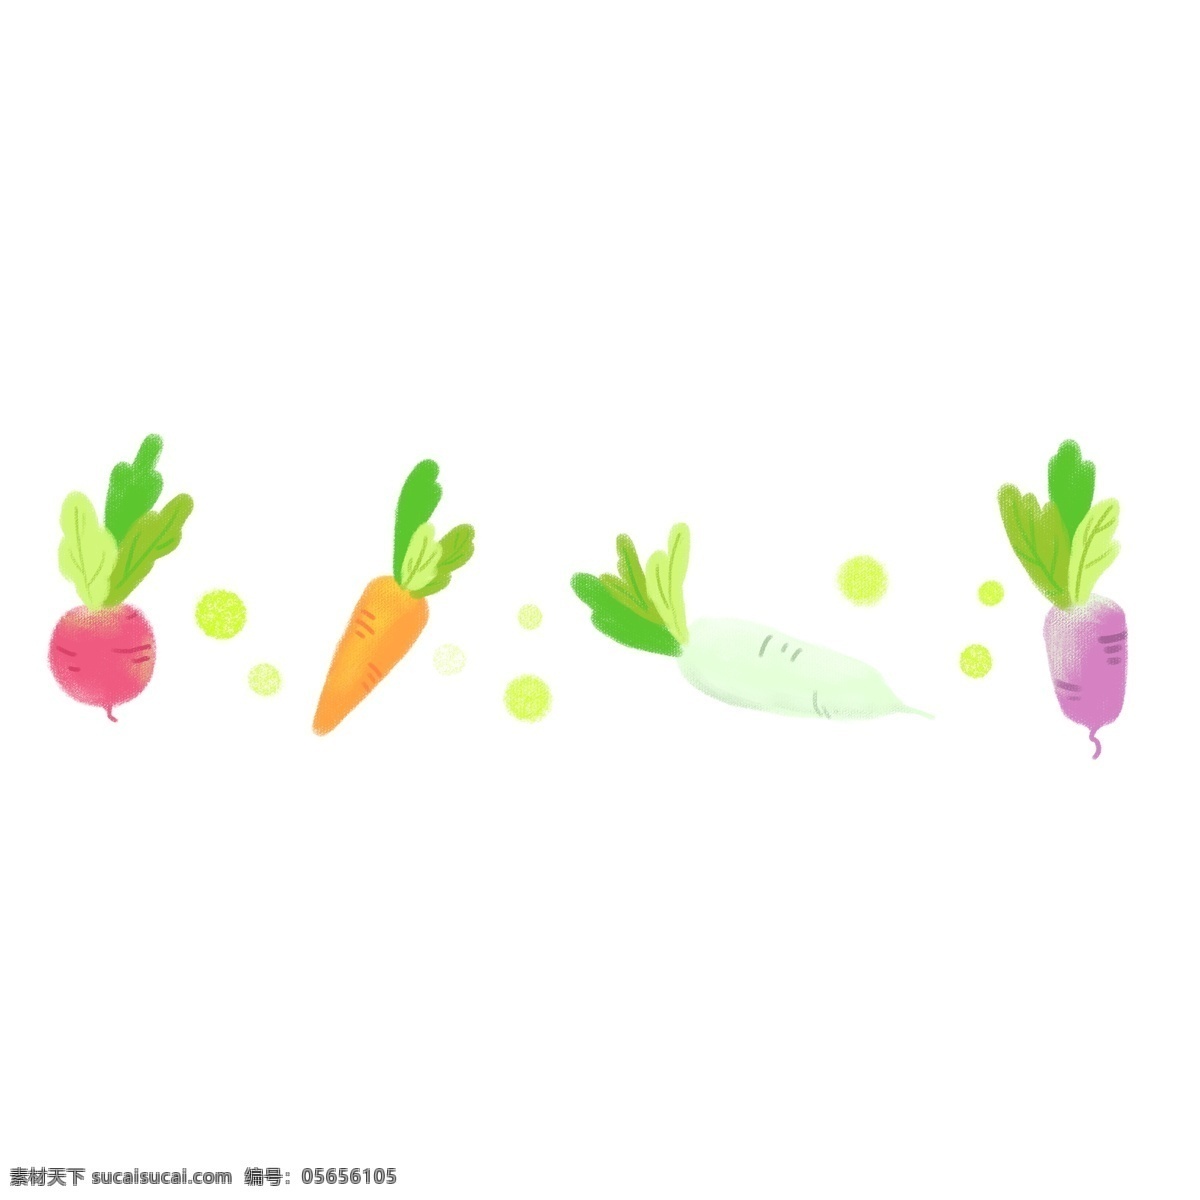 蔬菜 可爱 分割线 新鲜的蔬菜 分割线插画 卡通插画 简易分割线 直线分割线 可爱的分割线